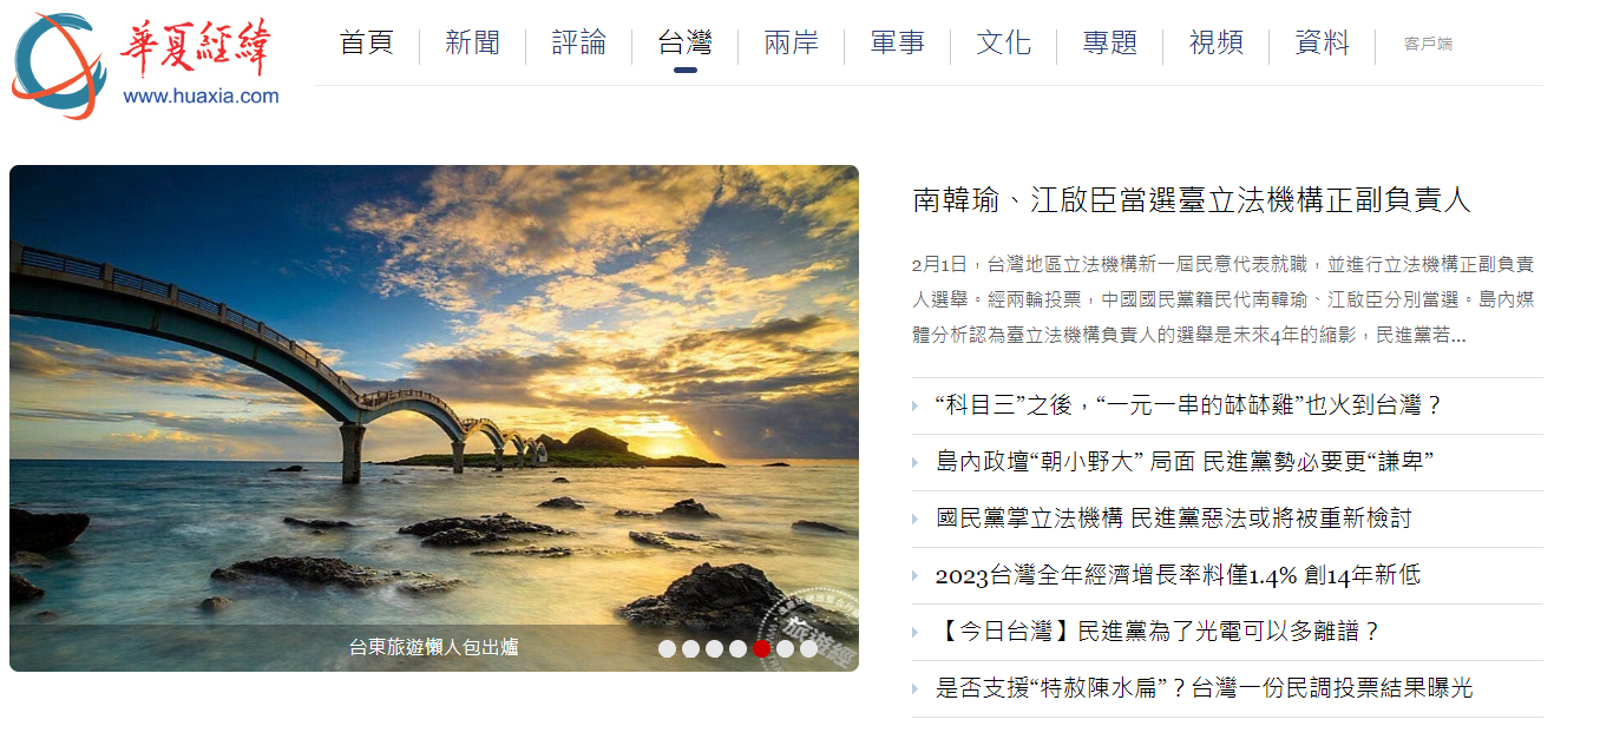 《華夏經緯網》的繁體版本，韓國瑜變成了「南韓瑜」